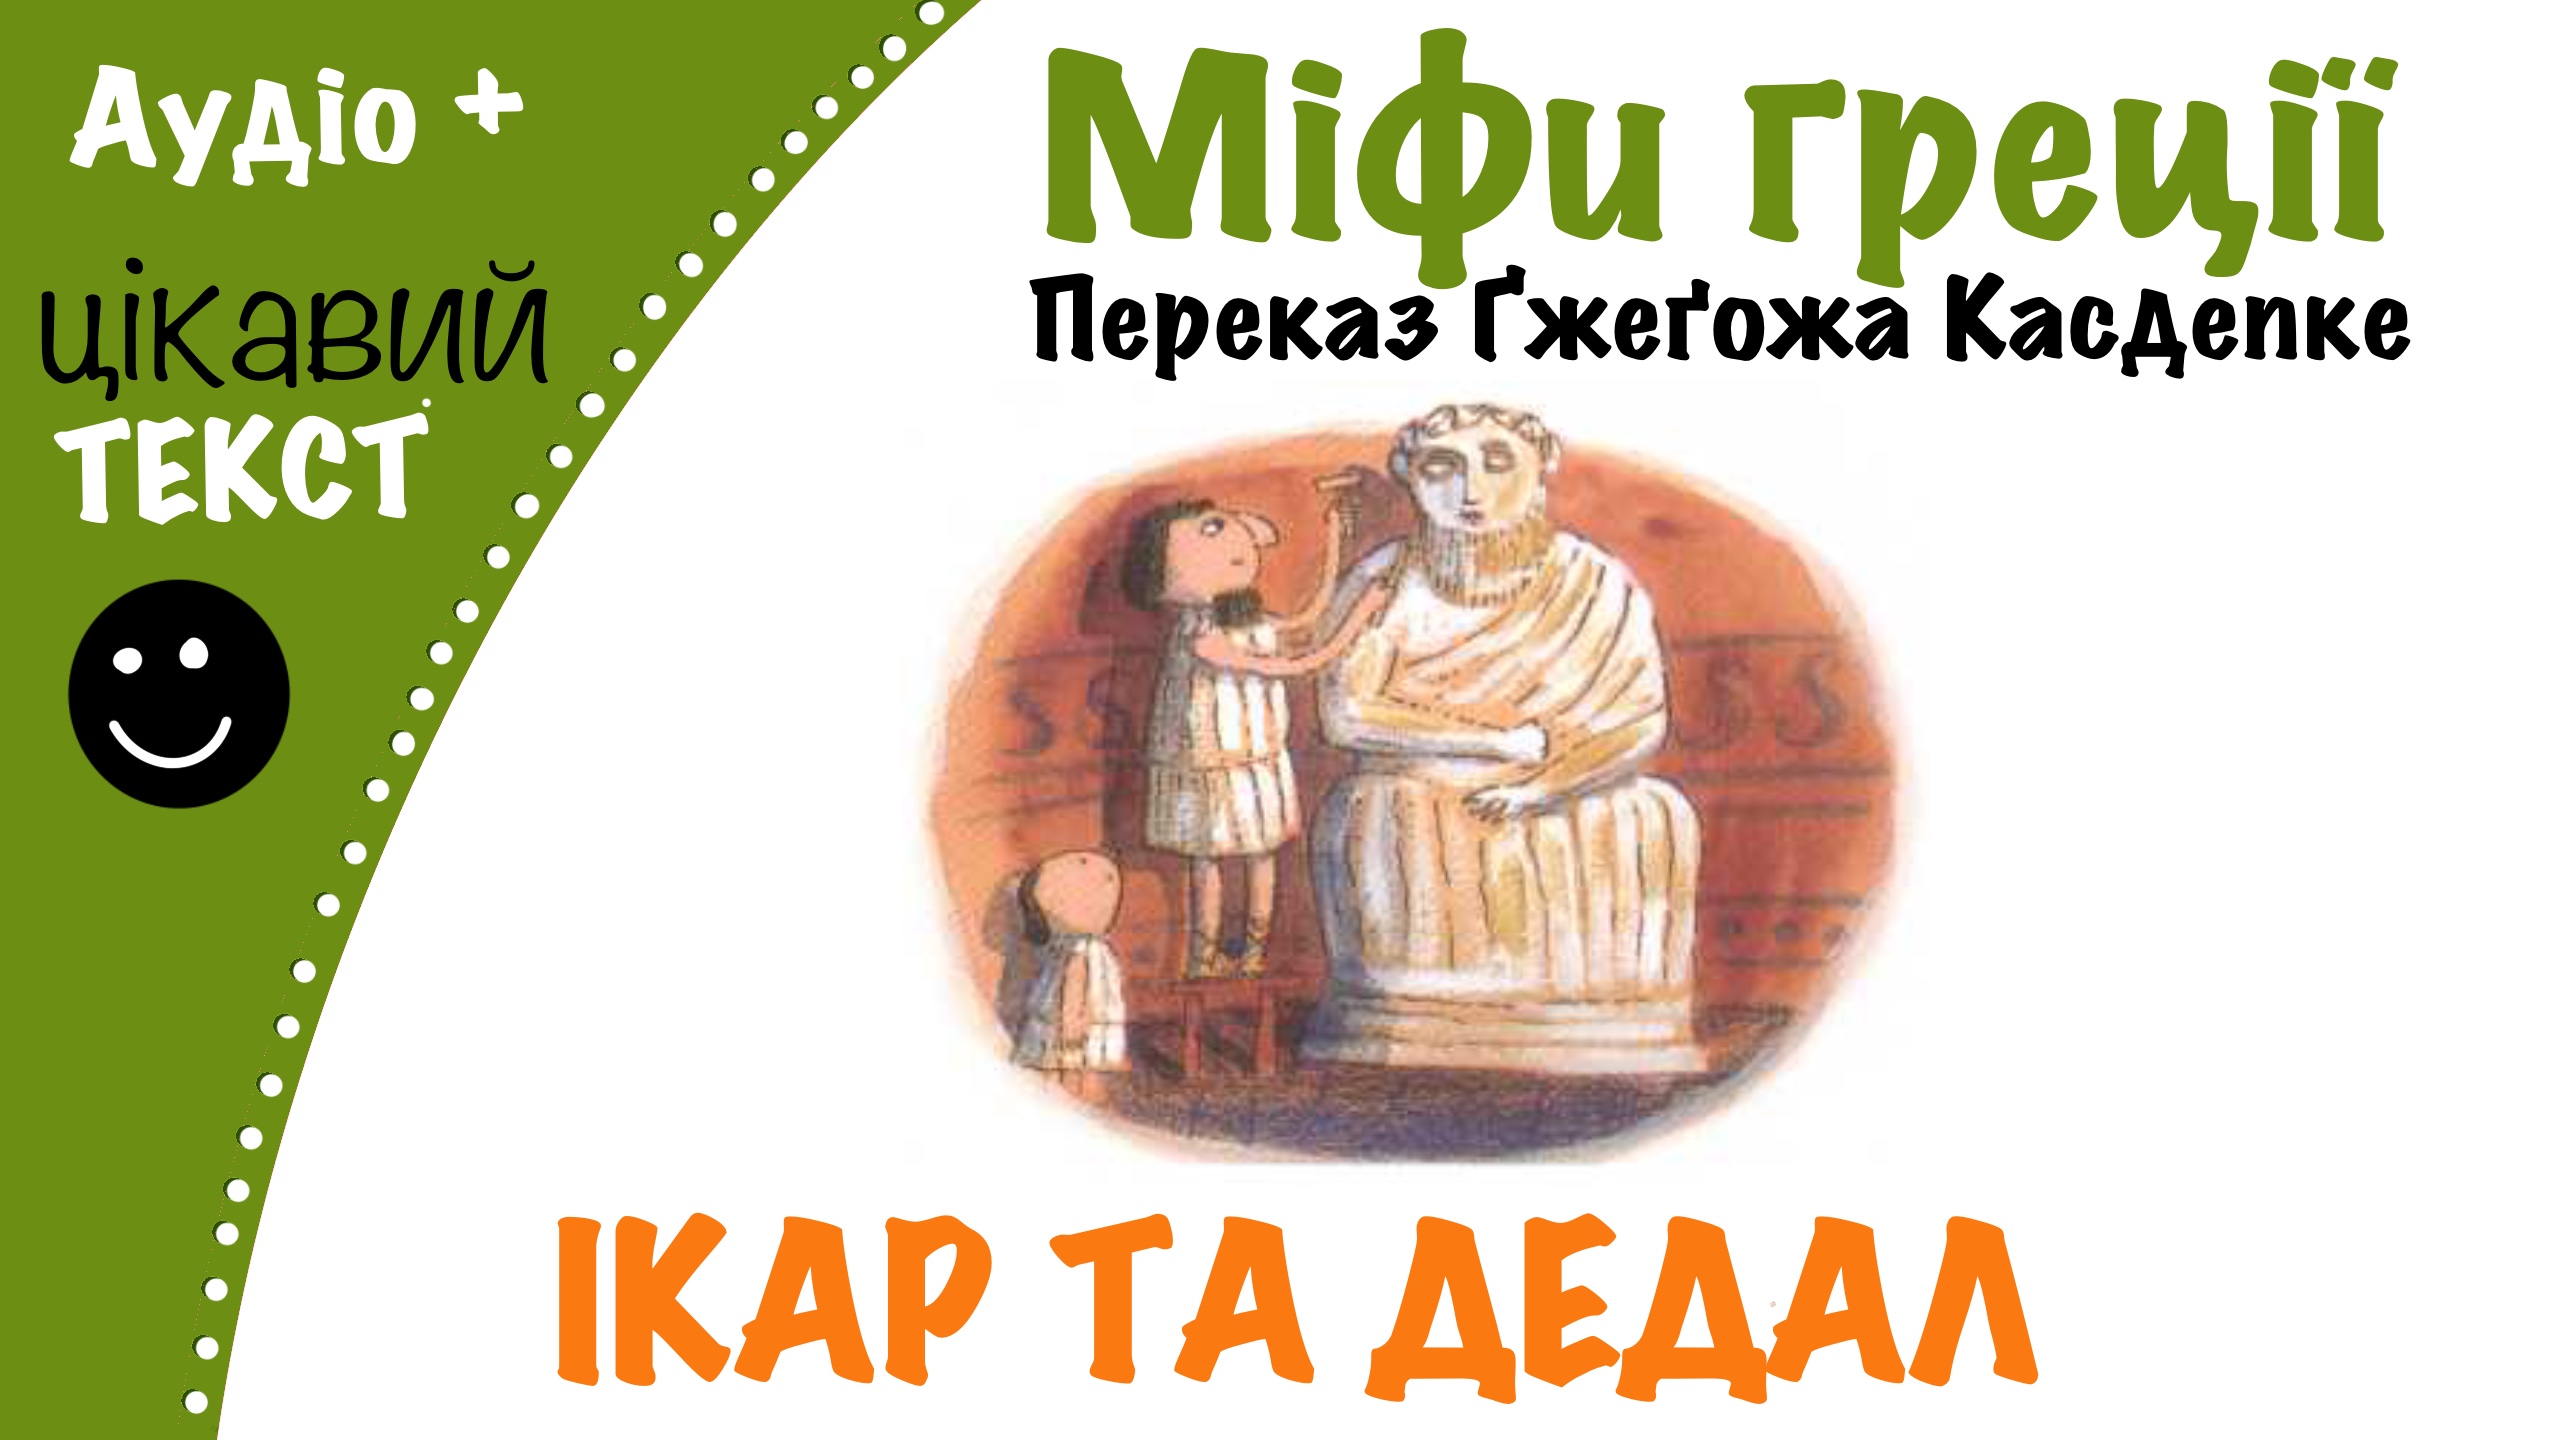 Перейти до: Грецький міф про Ікара та Дедала. Переказ Ґжеґожа Касдепке